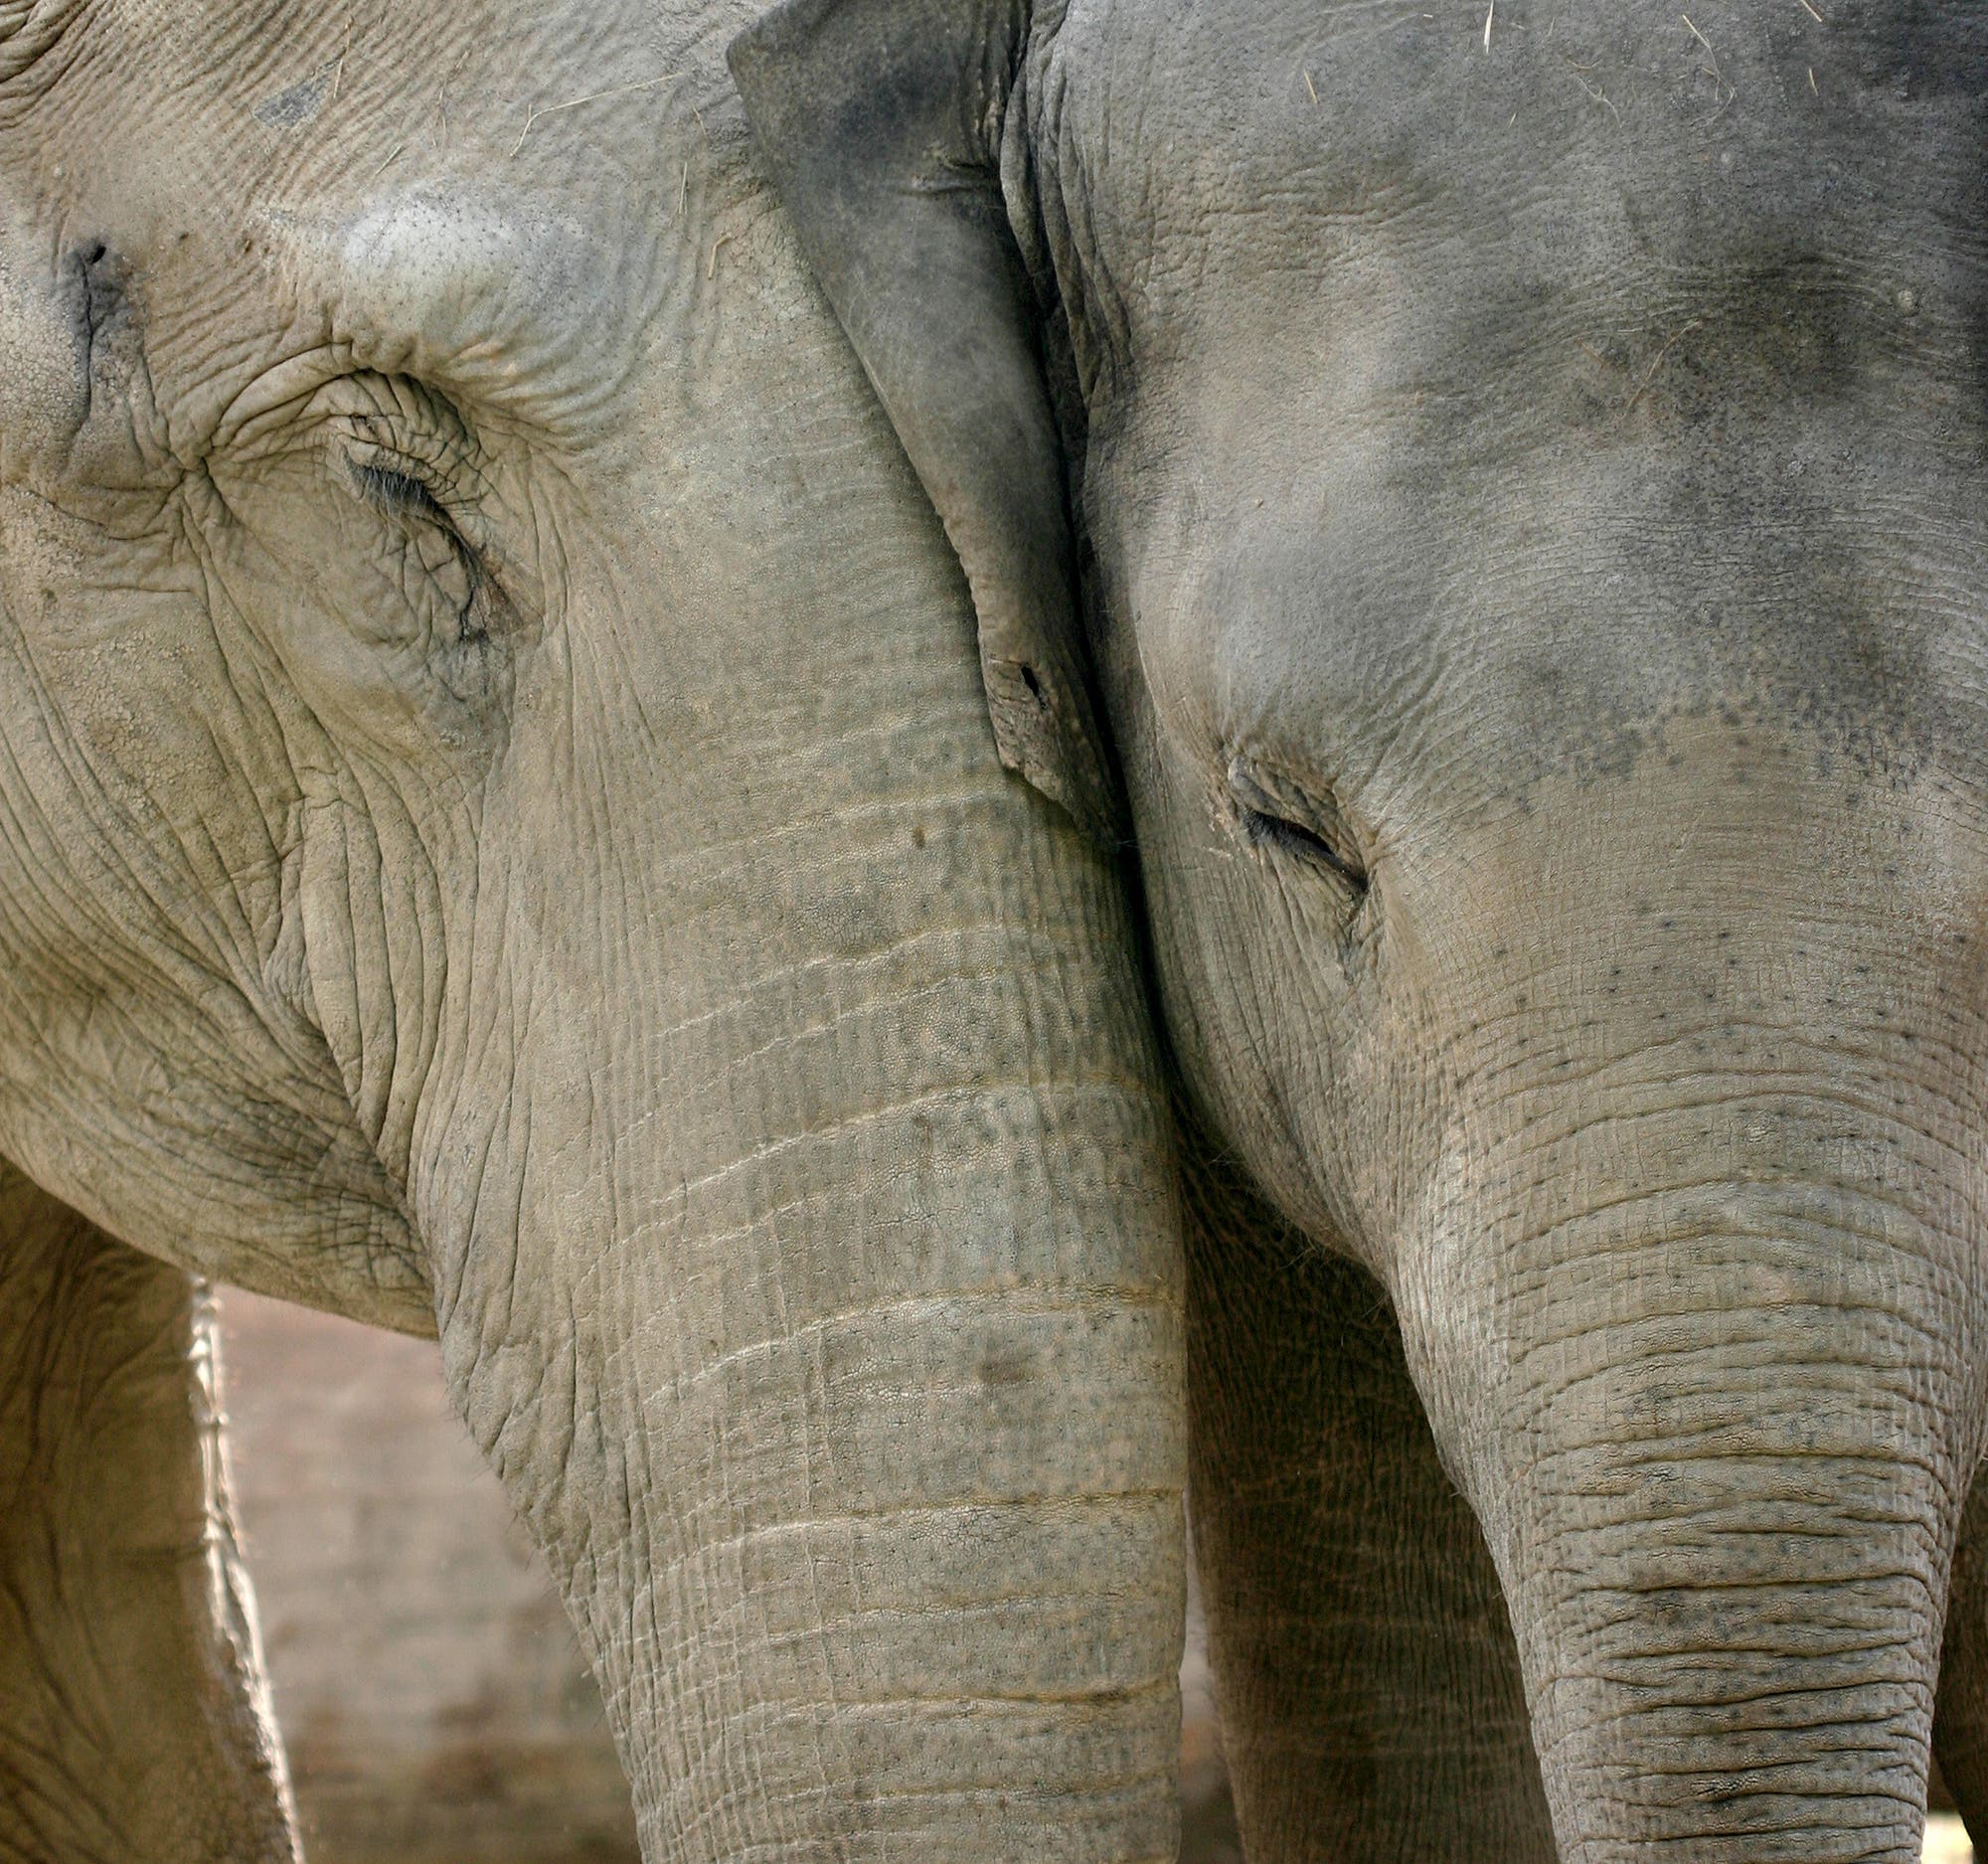 Asiatische Elefanten trösten einander